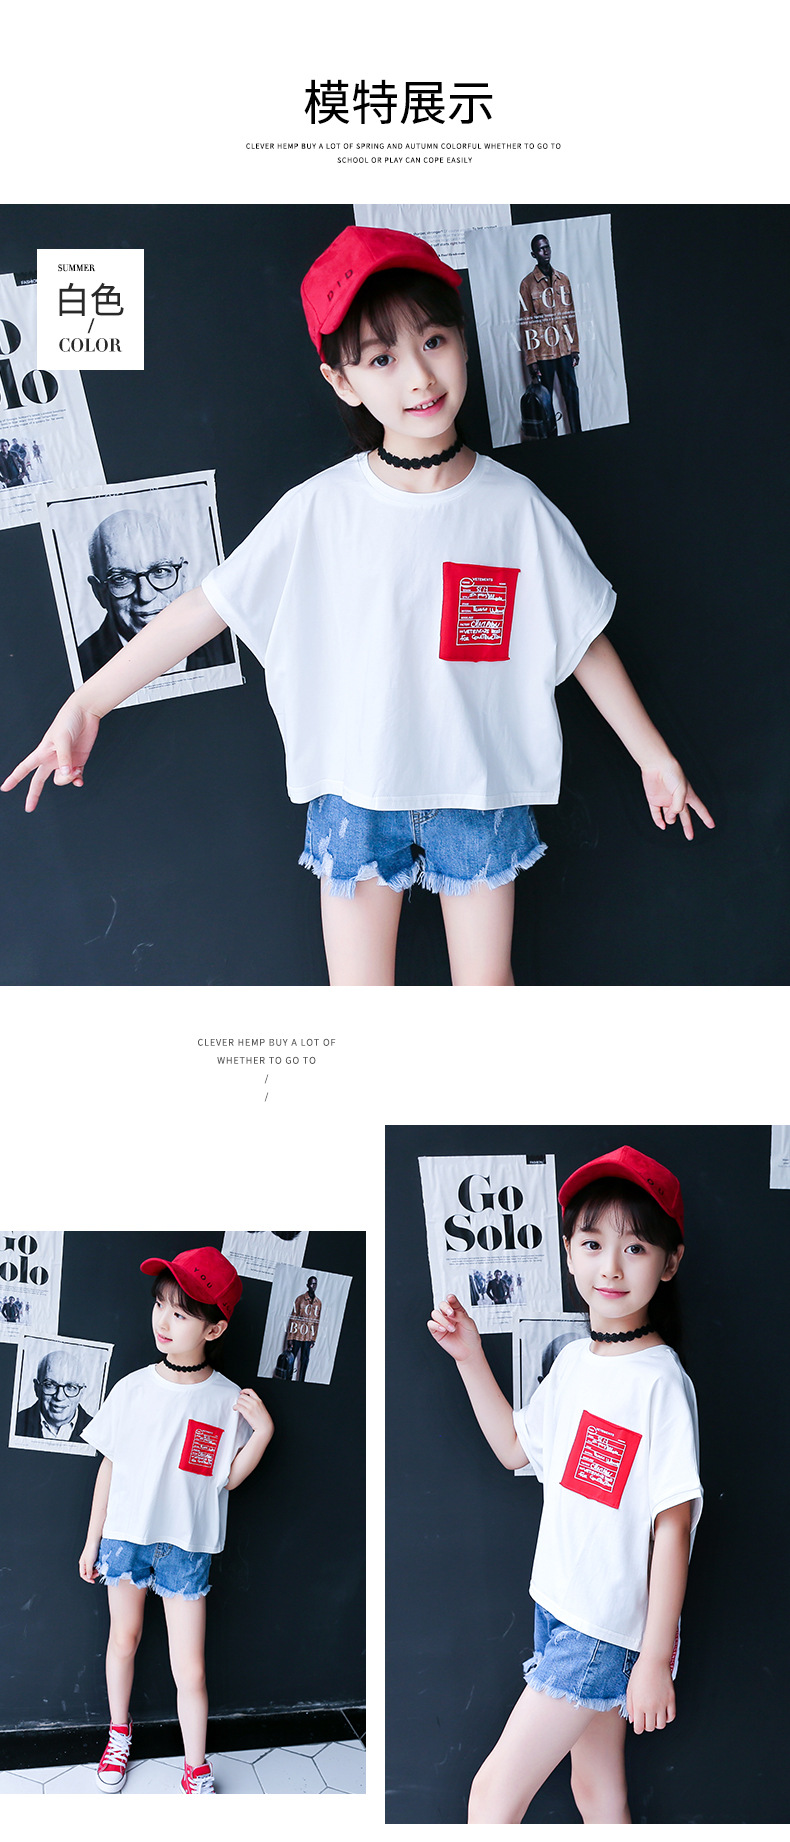 儿童韩版印花织带洋气体恤衫潮新款夏装纯棉短袖T恤上衣英服